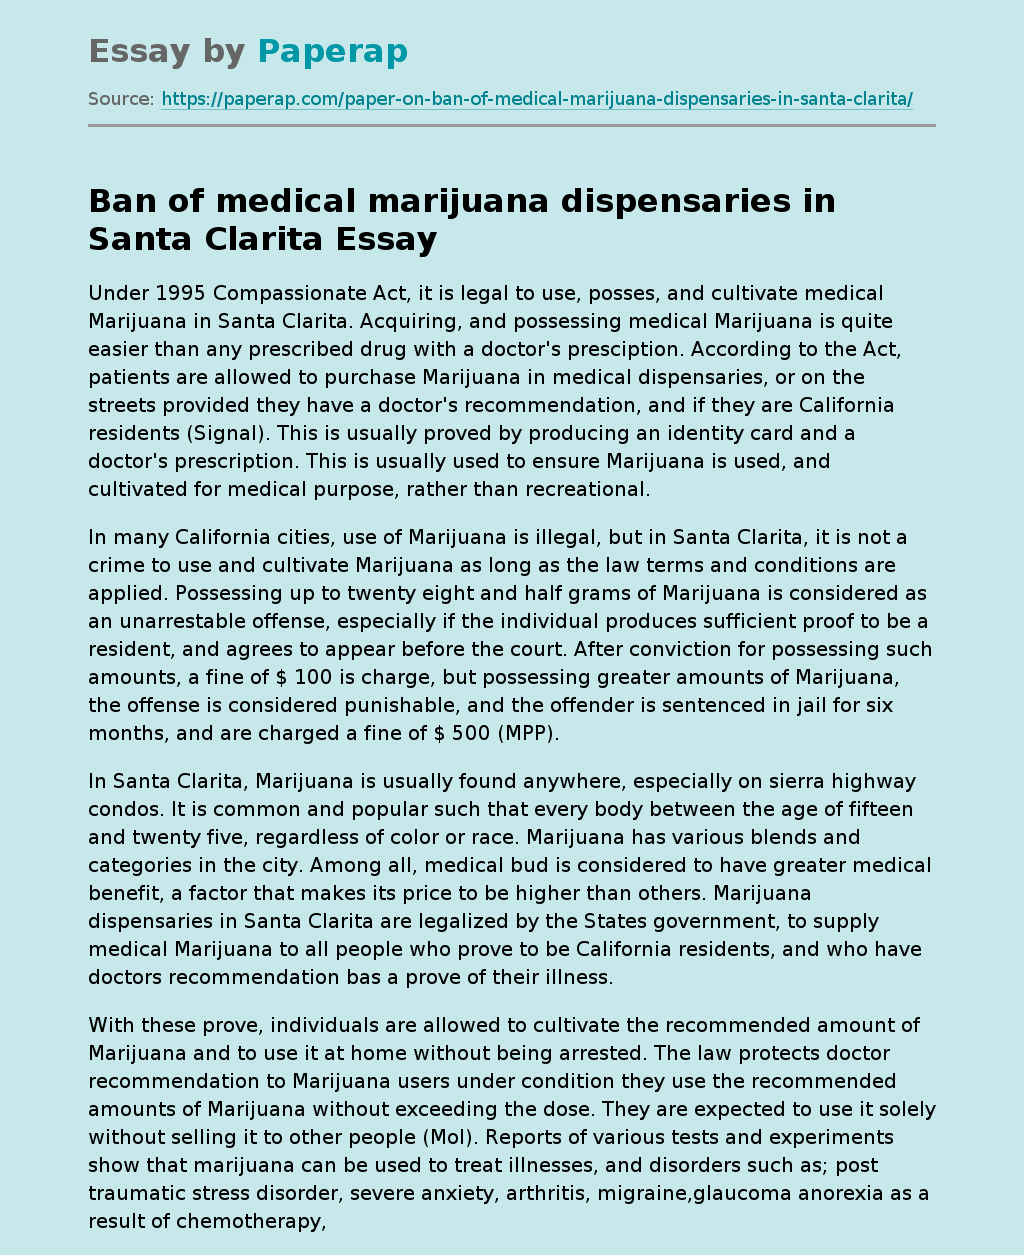 Ban of medical marijuana dispensaries in Santa Clarita